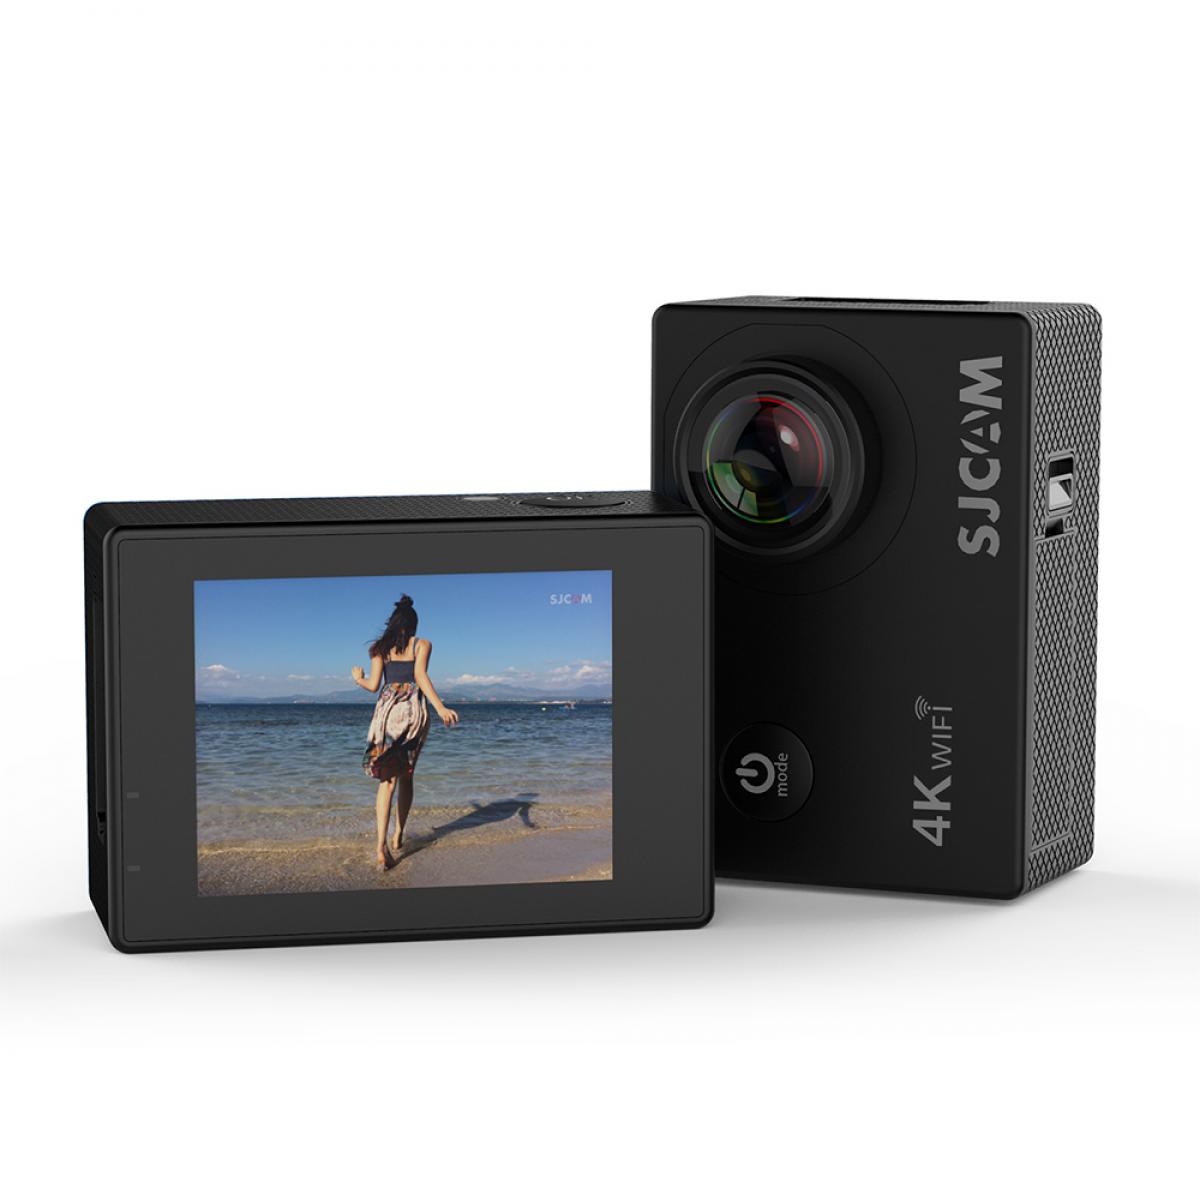 SJCAM SJ4000 AIR Action Camera Deportiva 4K 30FPS WiFi 2.0 polegadas LCD, mergulho 30m à prova d'água